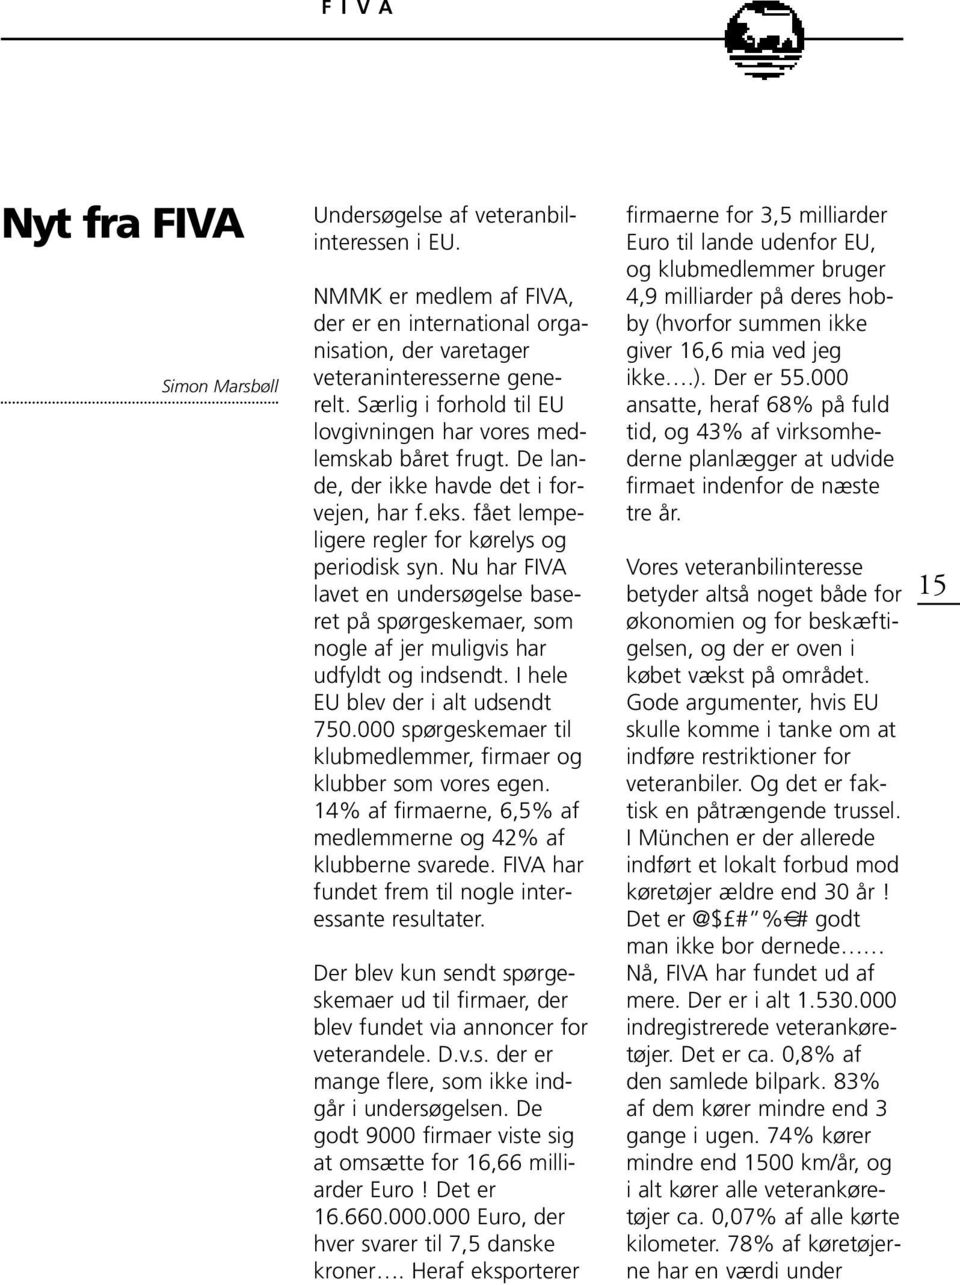 Nu har FIVA lavet en undersøgelse baseret på spørgeskemaer, som nogle af jer muligvis har udfyldt og indsendt. I hele EU blev der i alt udsendt 750.